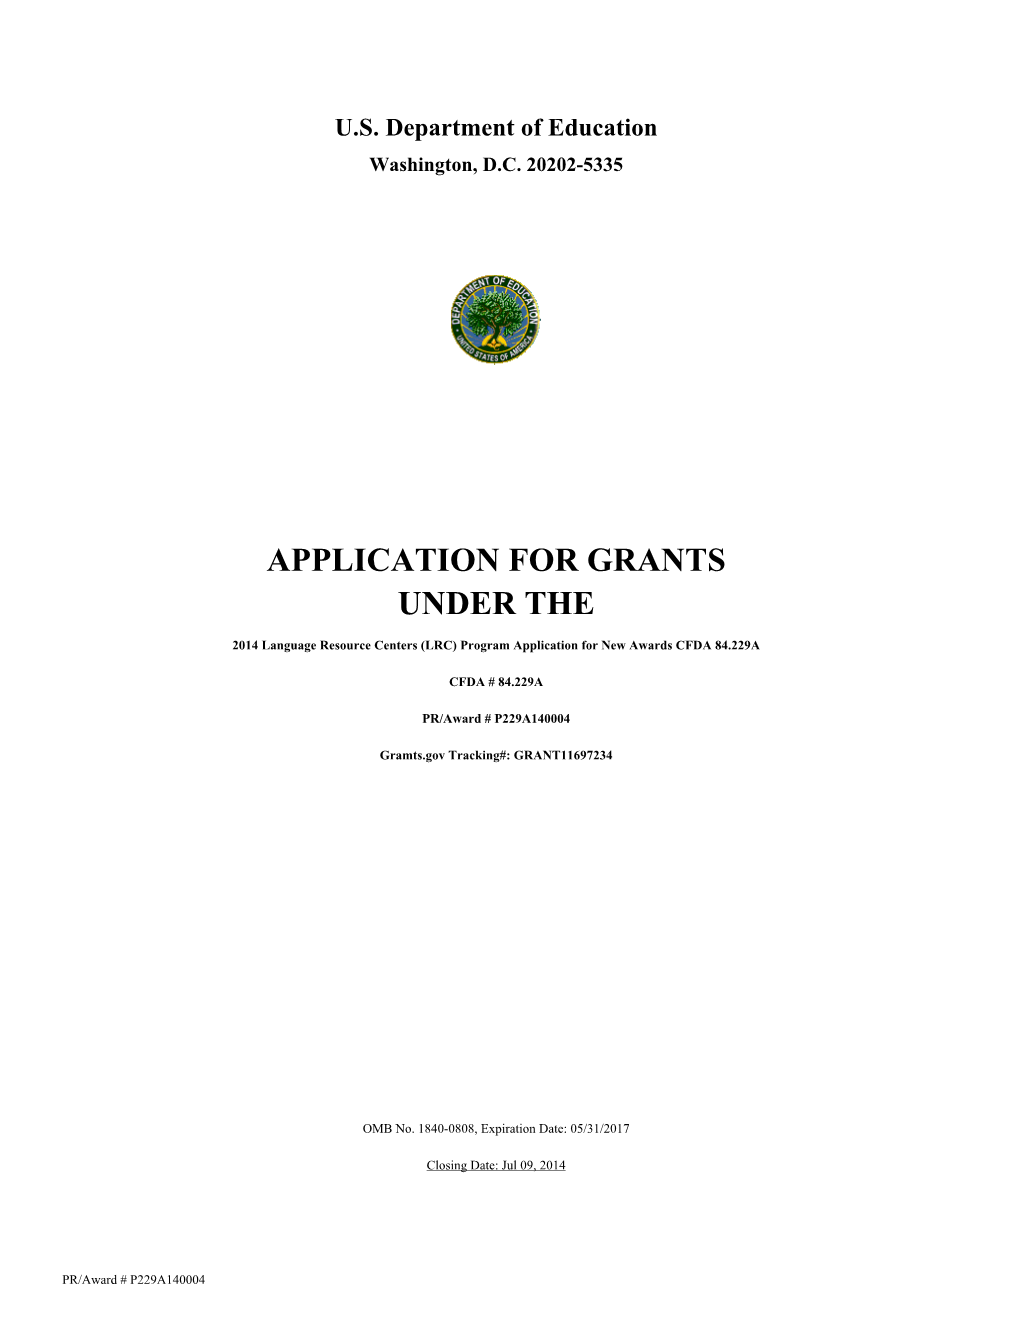 FY 2014 LRC Grant Application